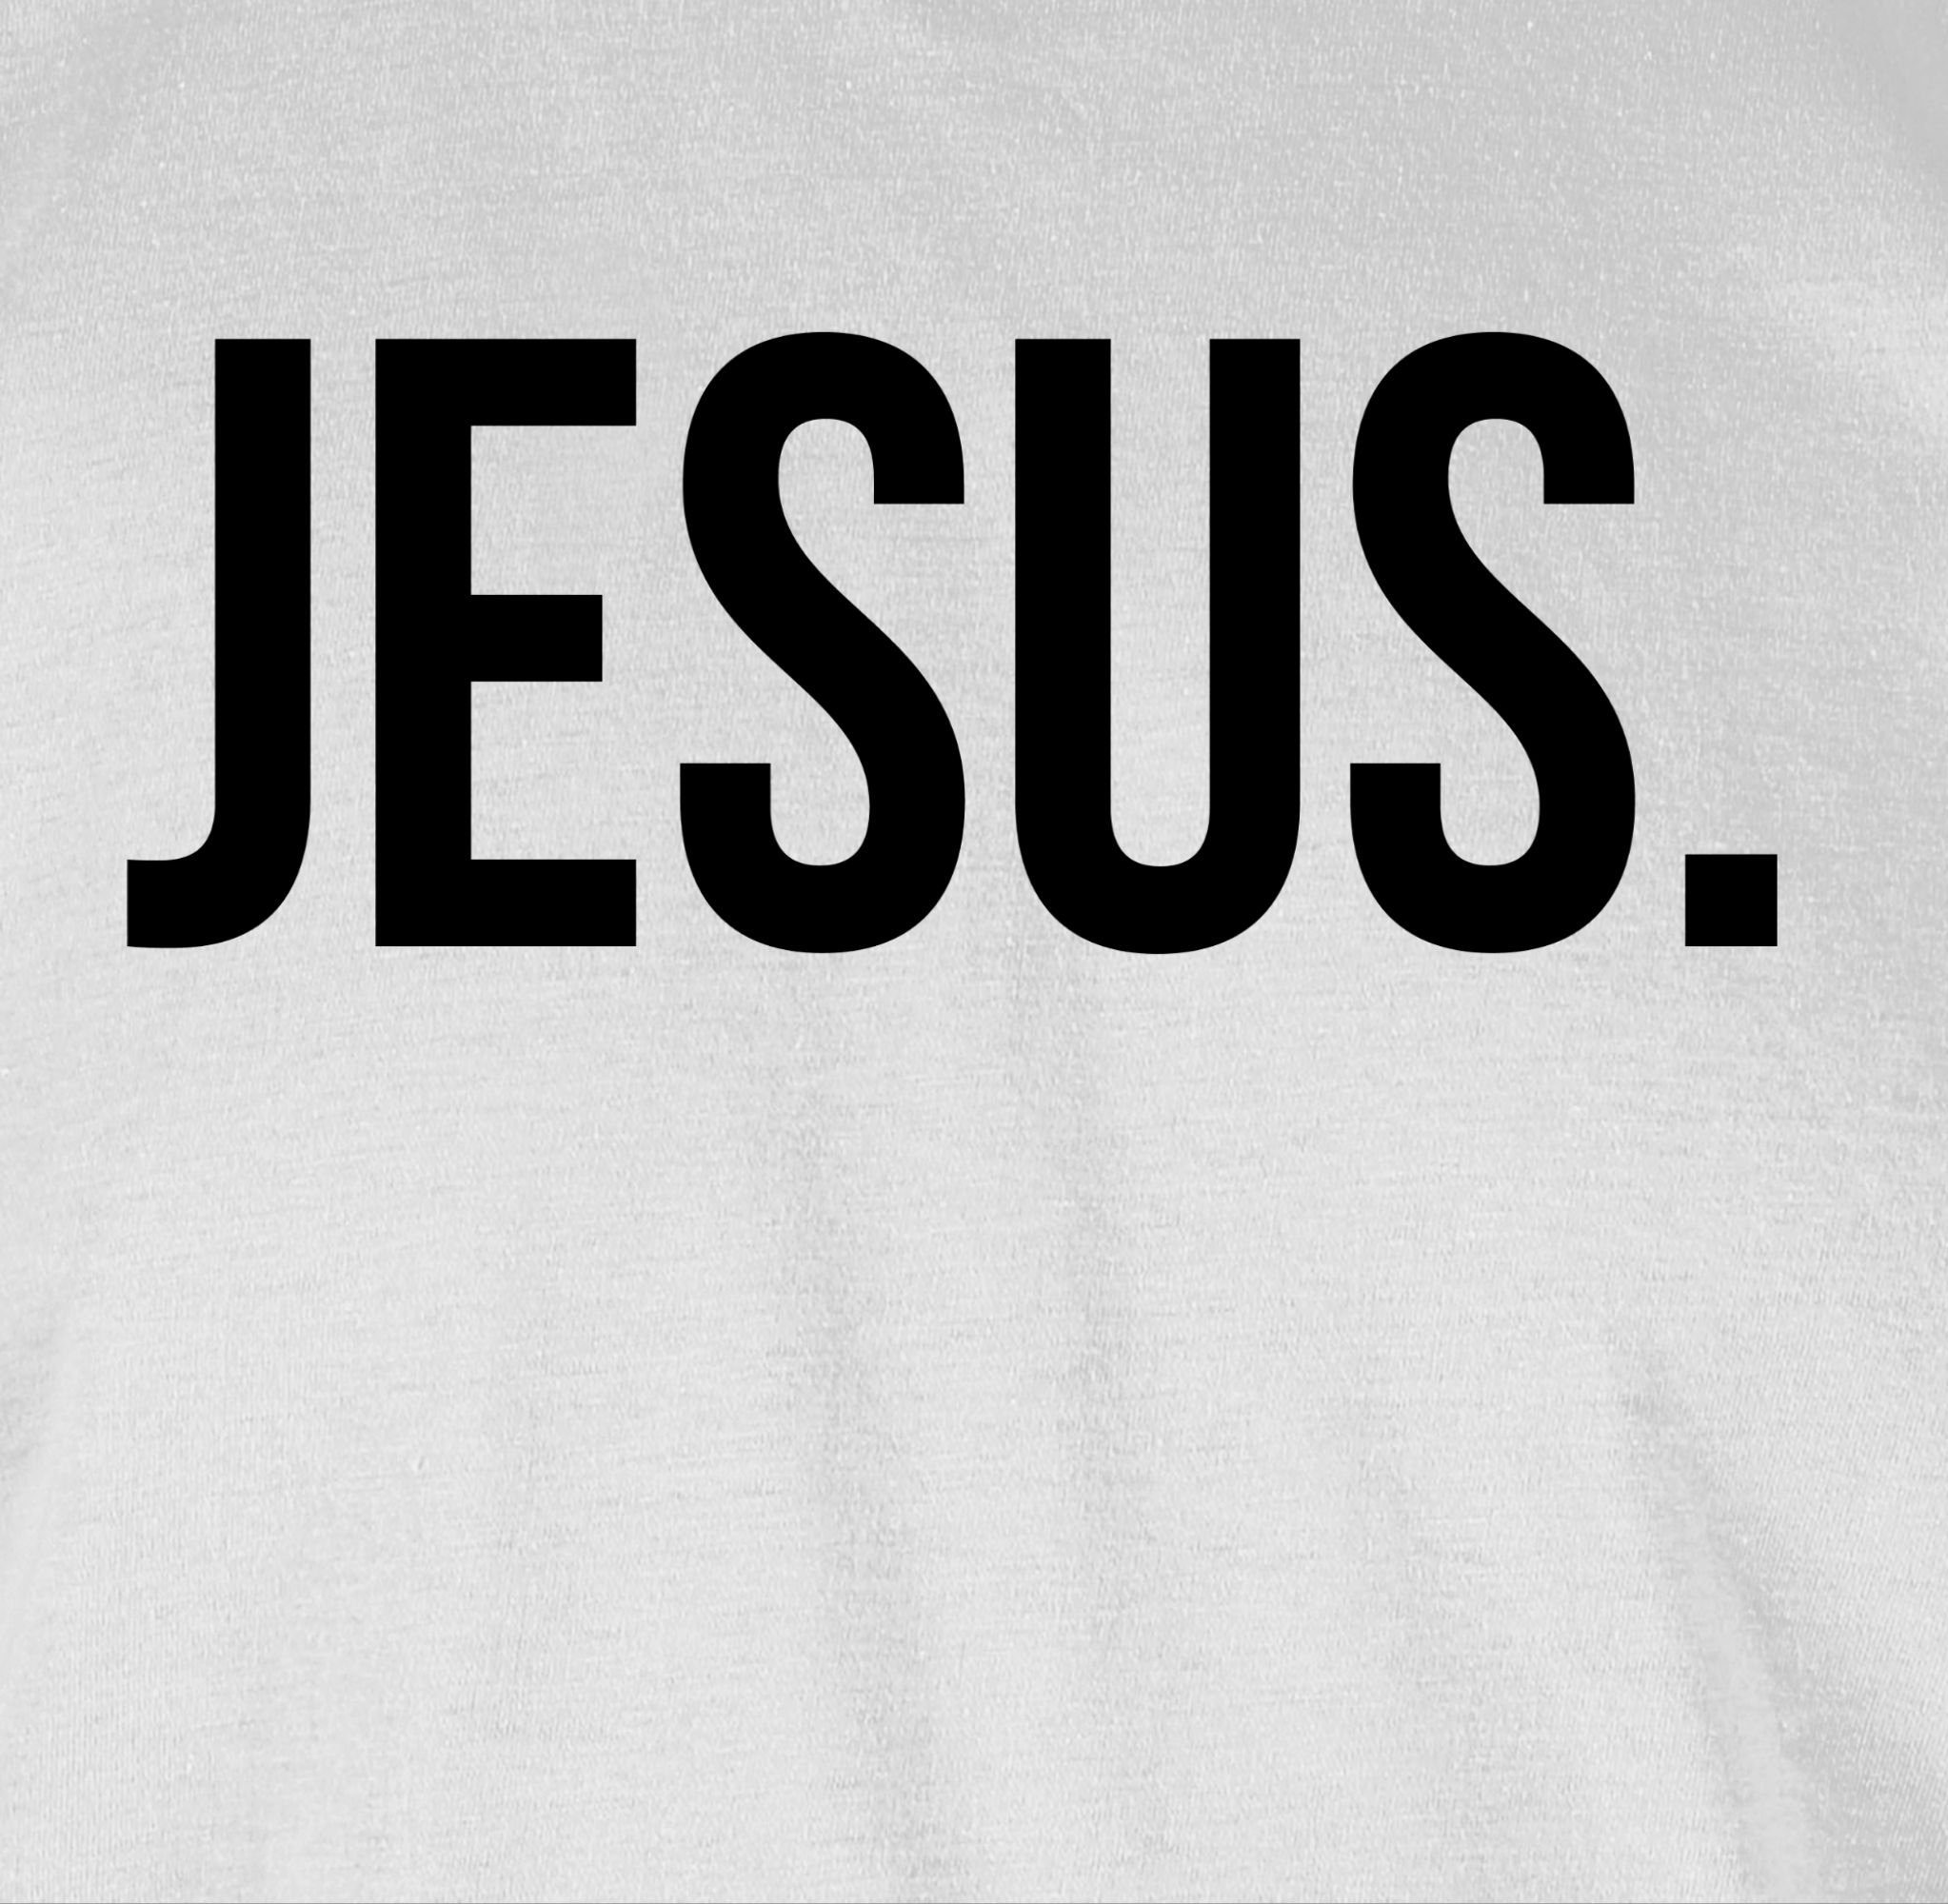 Statement Glaube Religion Christus Shirtracer T-Shirt Weiß Jesus 1